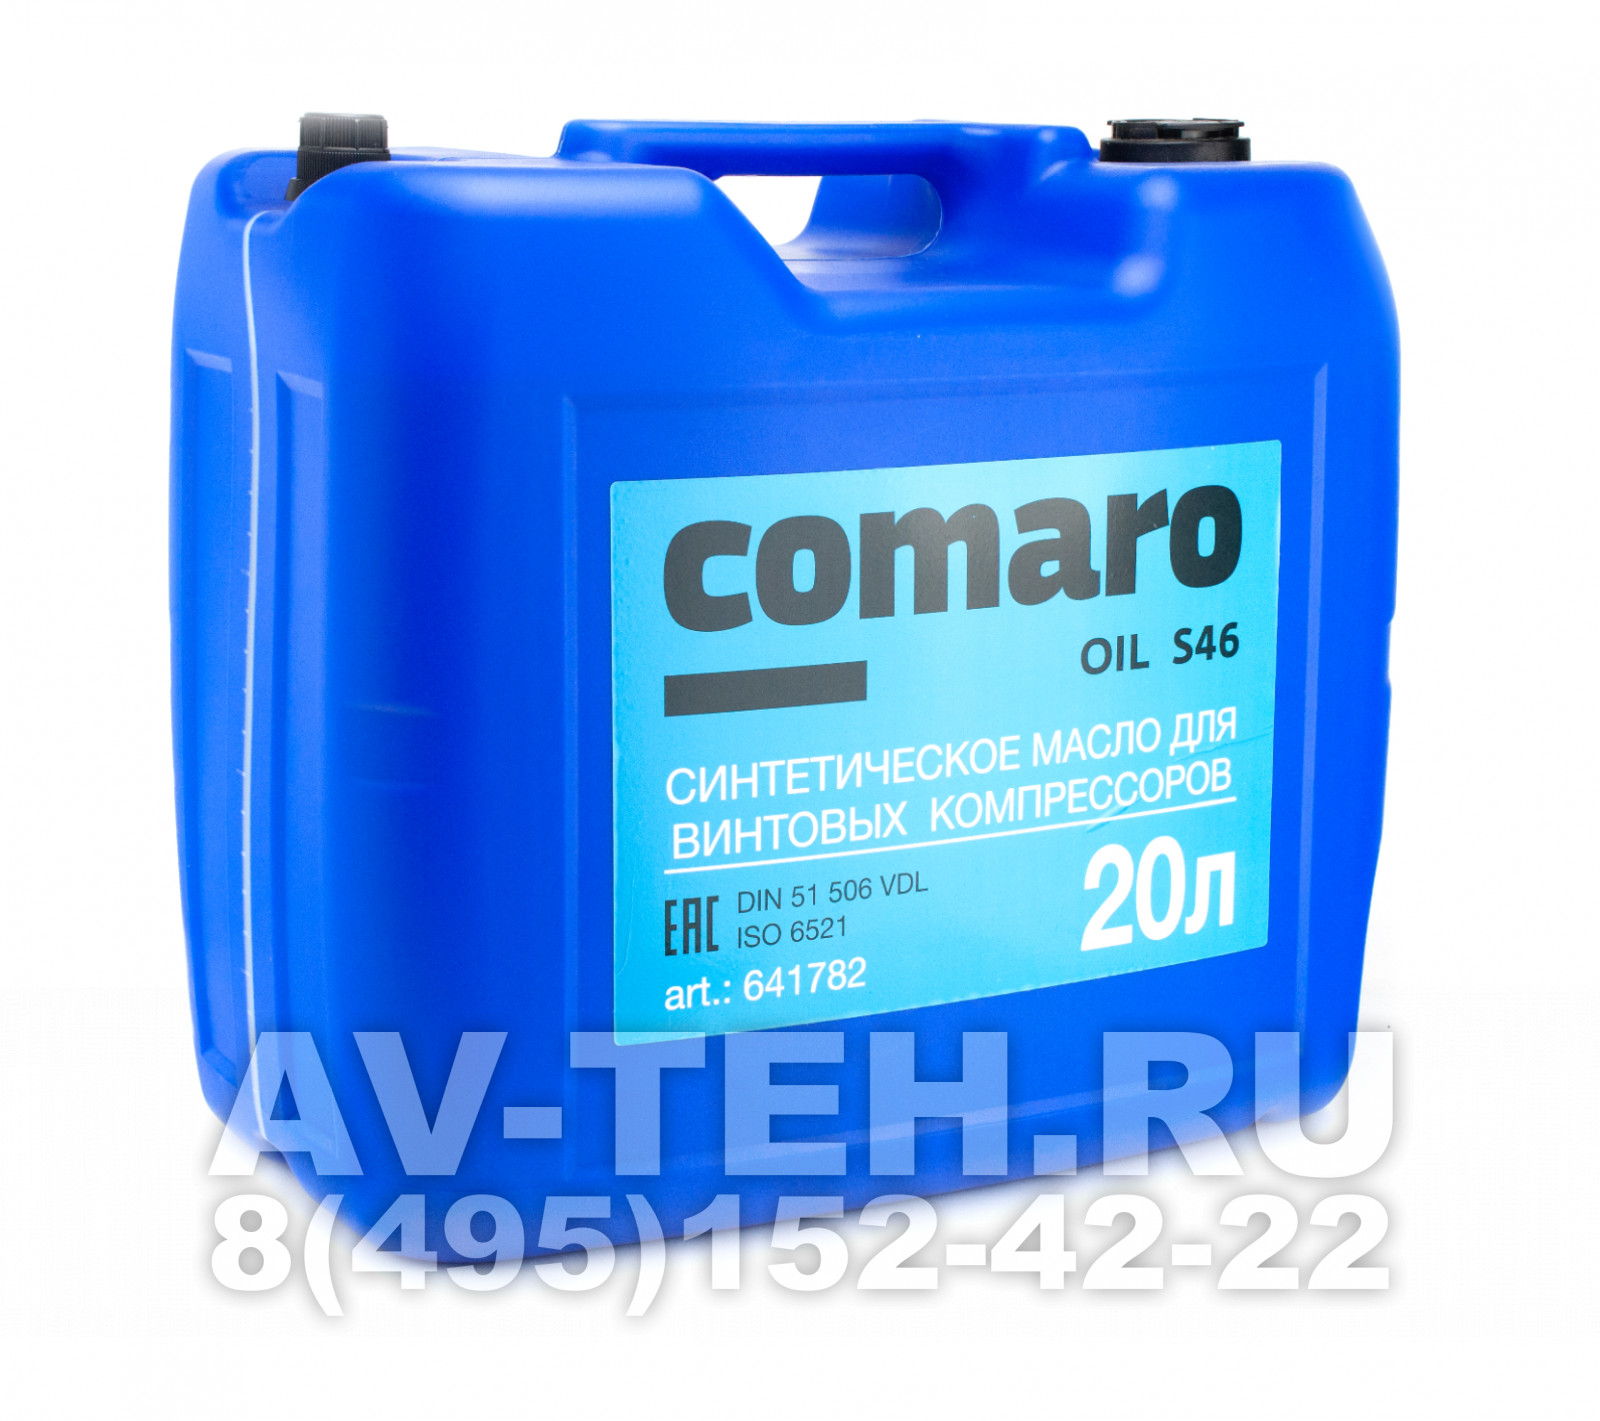 Компрессорное масло Comaro Oil S46 20L